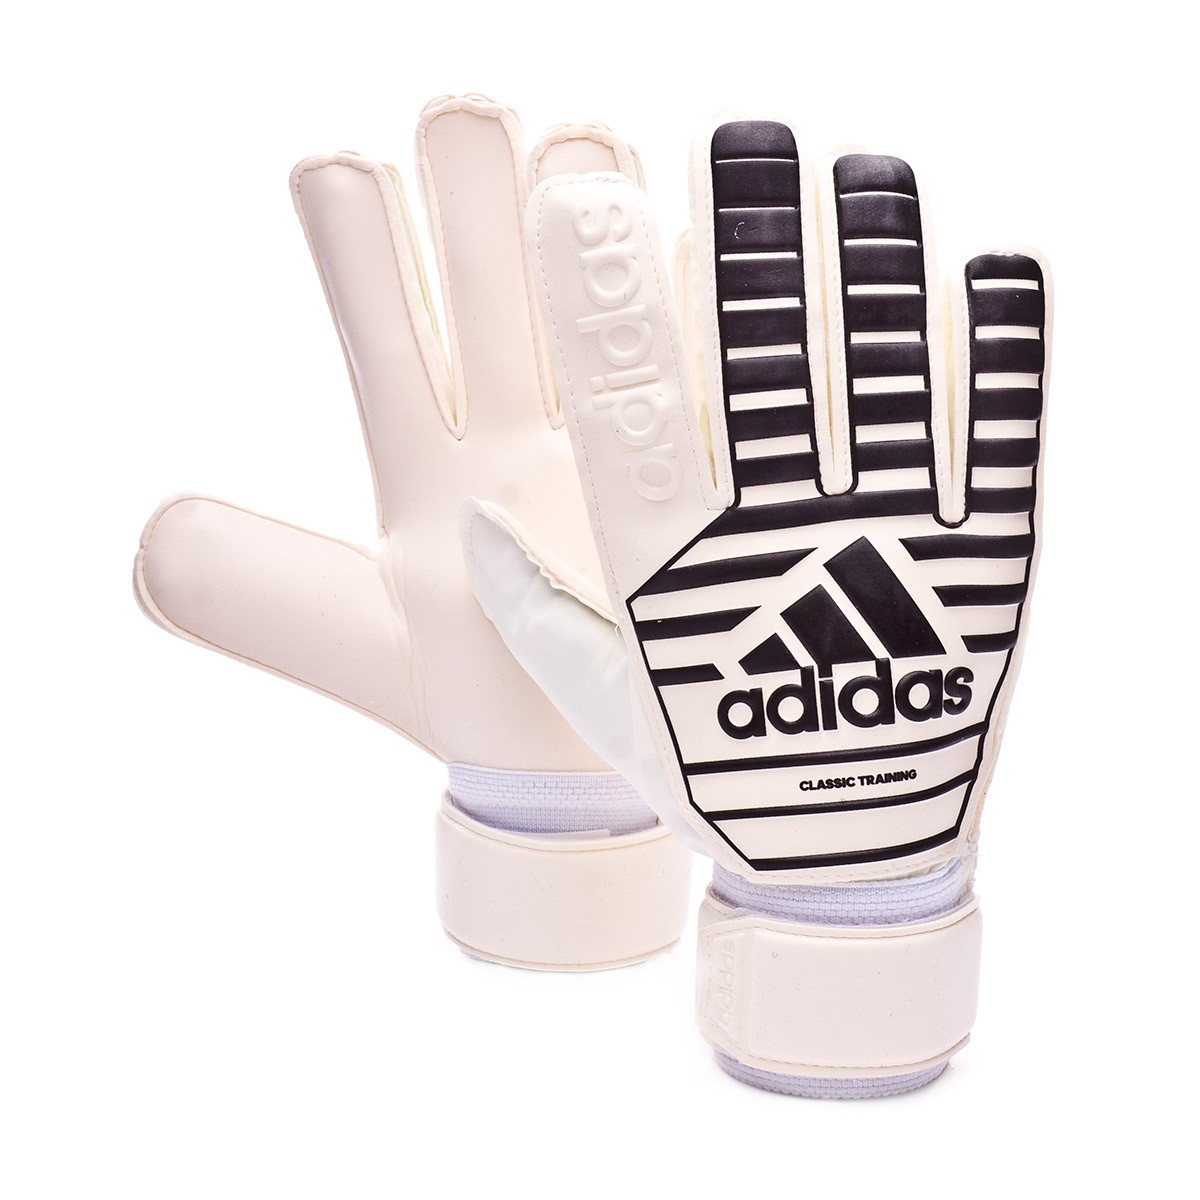 Glove adidas Classic Training White 